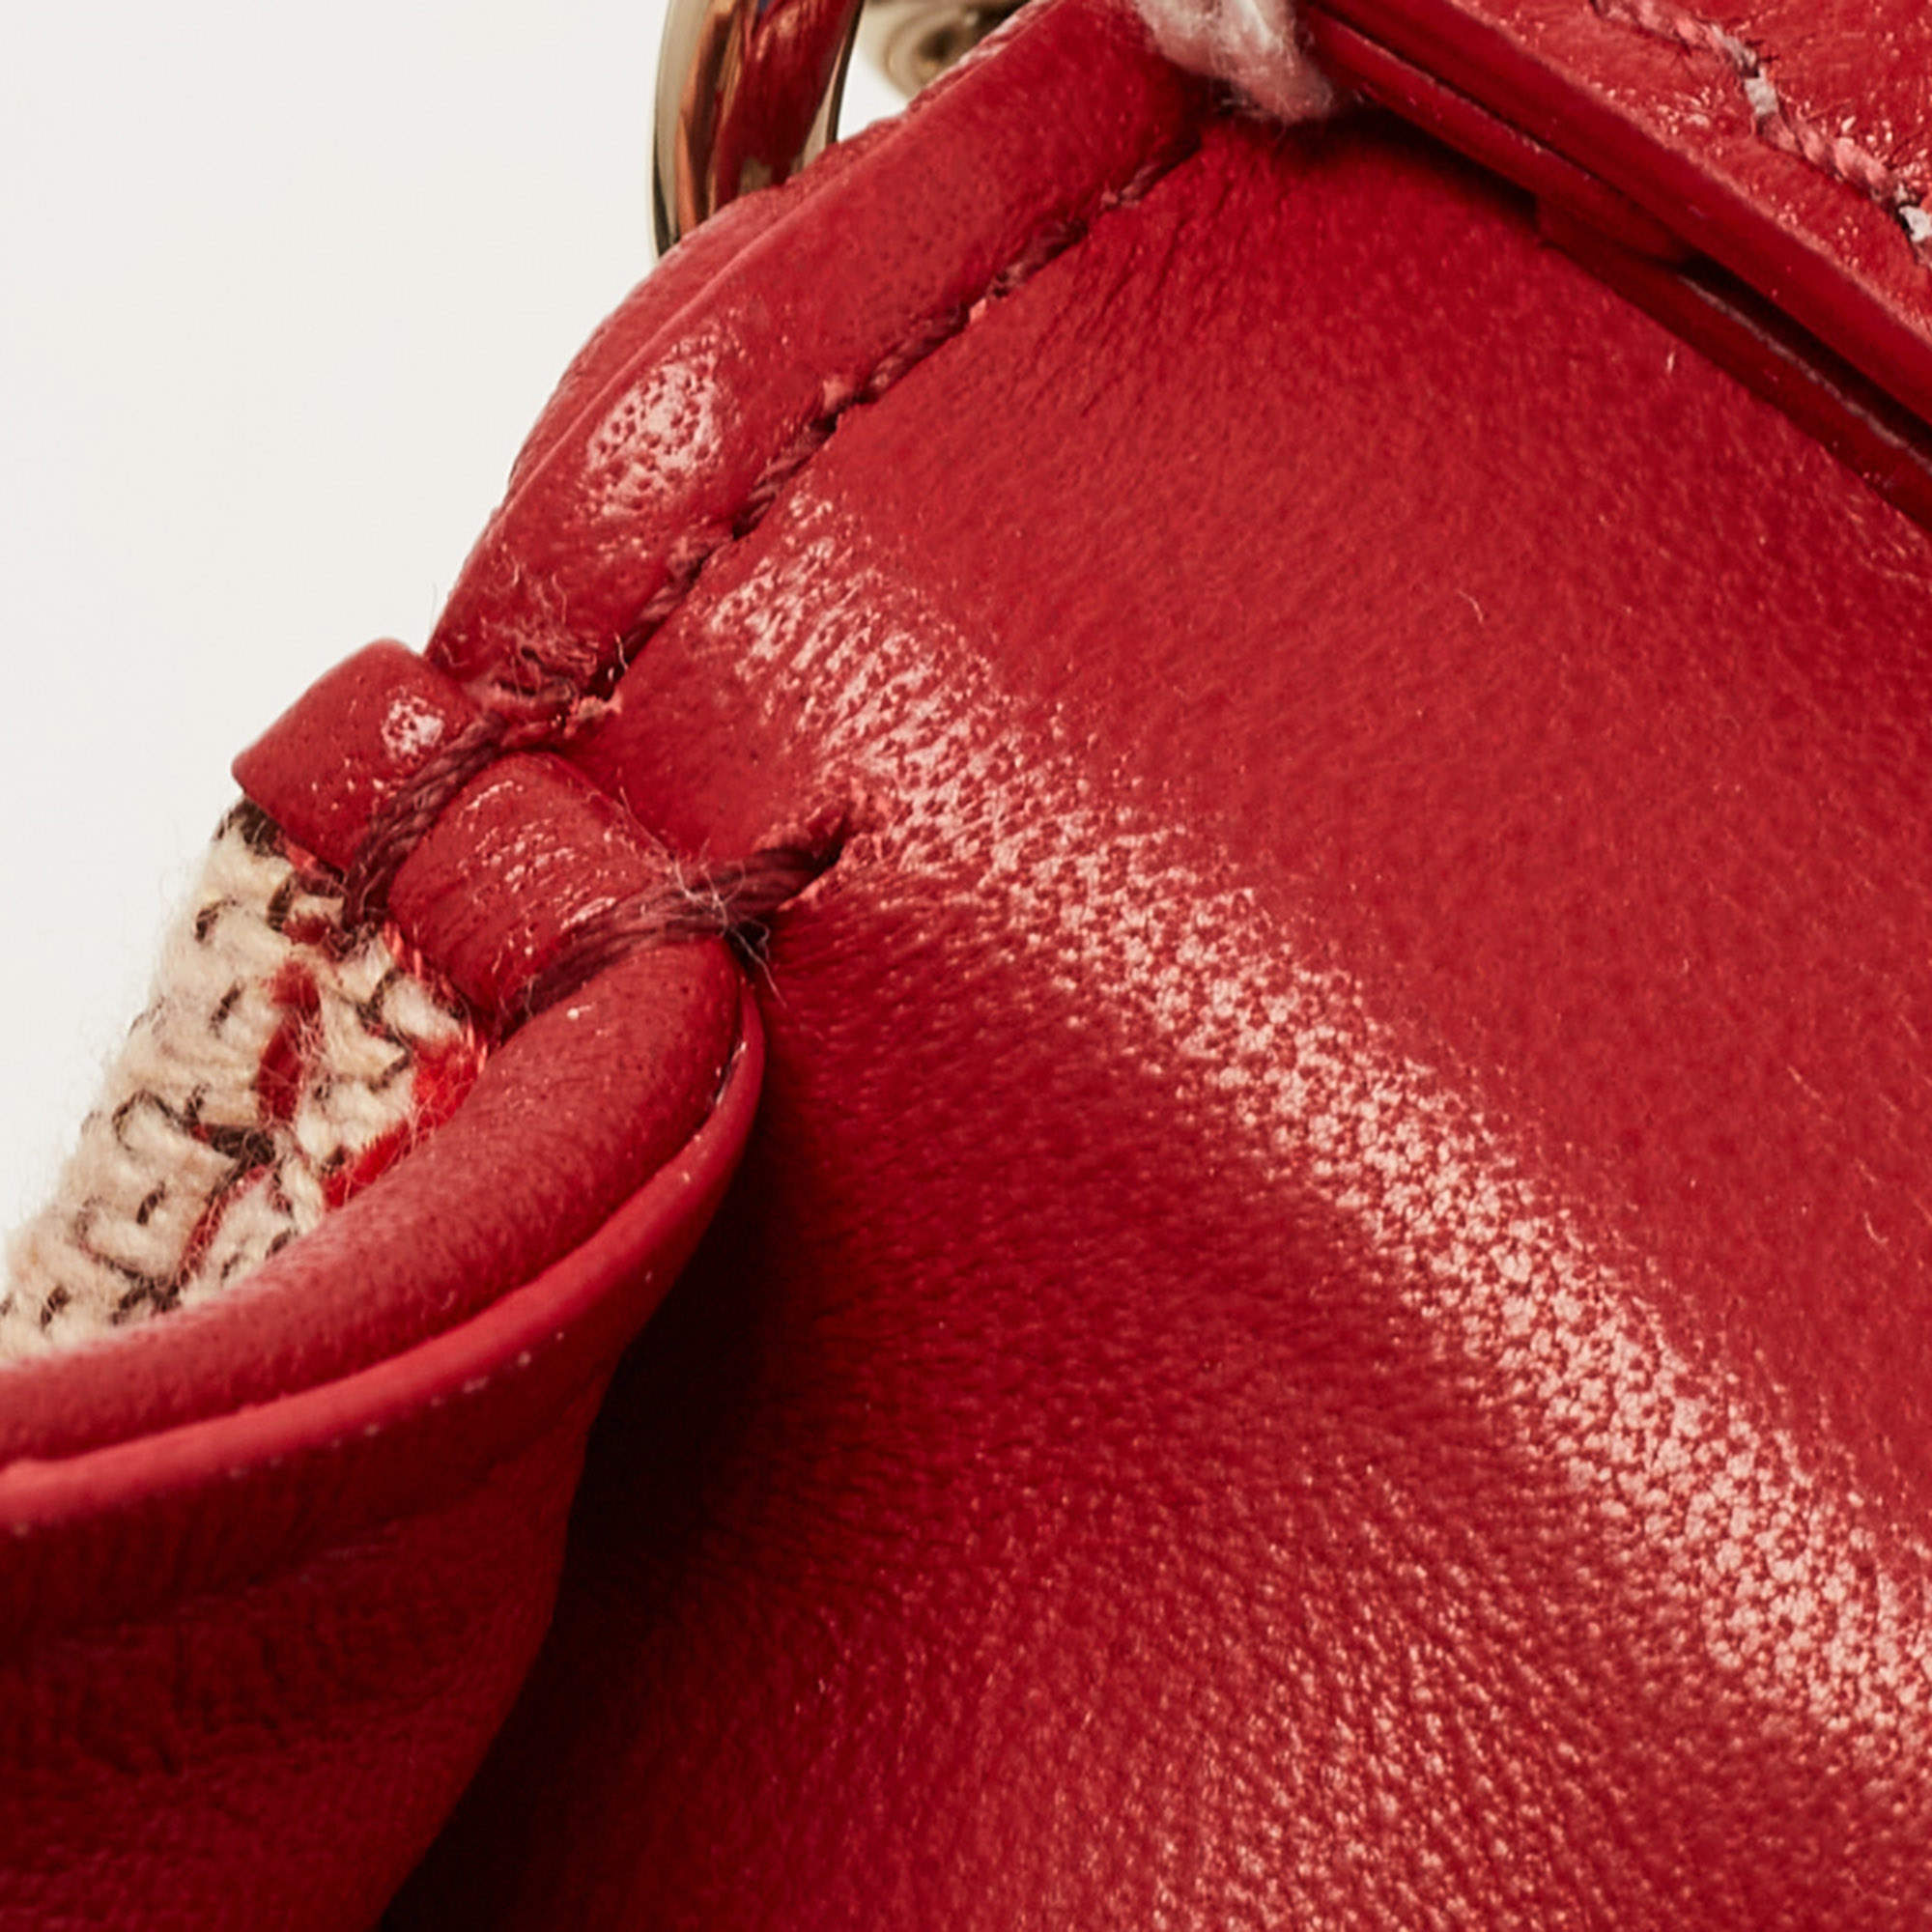 Valentino Garavani Handbags loco Women B0L97JSQJ4A Fabric Beige Red 1520€